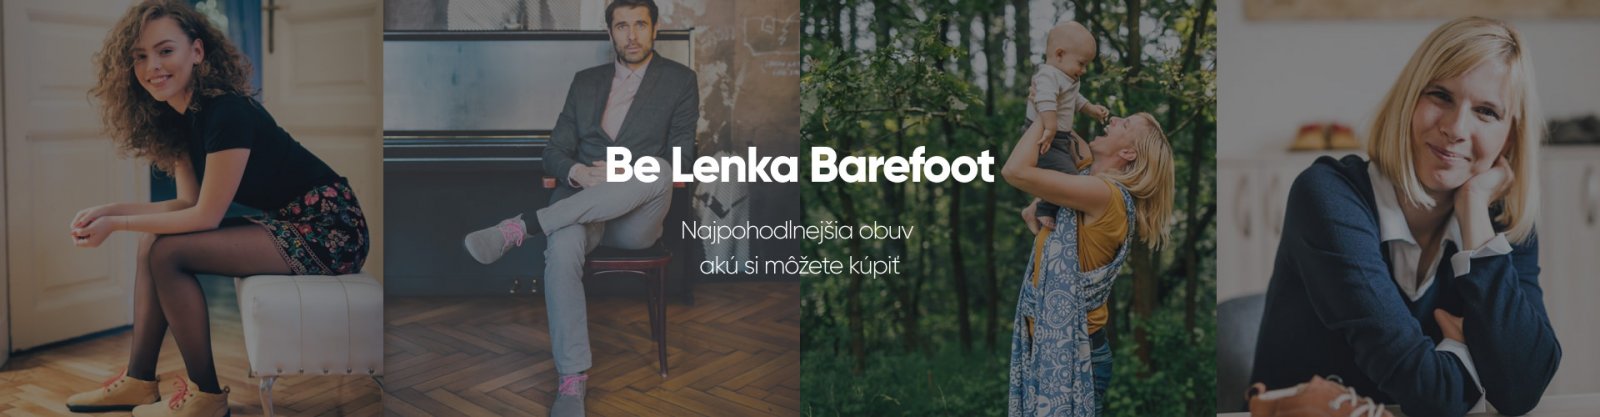 Be Lenka | Official | Obuwie barefoot, ergonomiczne nosidełka i chusty do noszenia dzieci